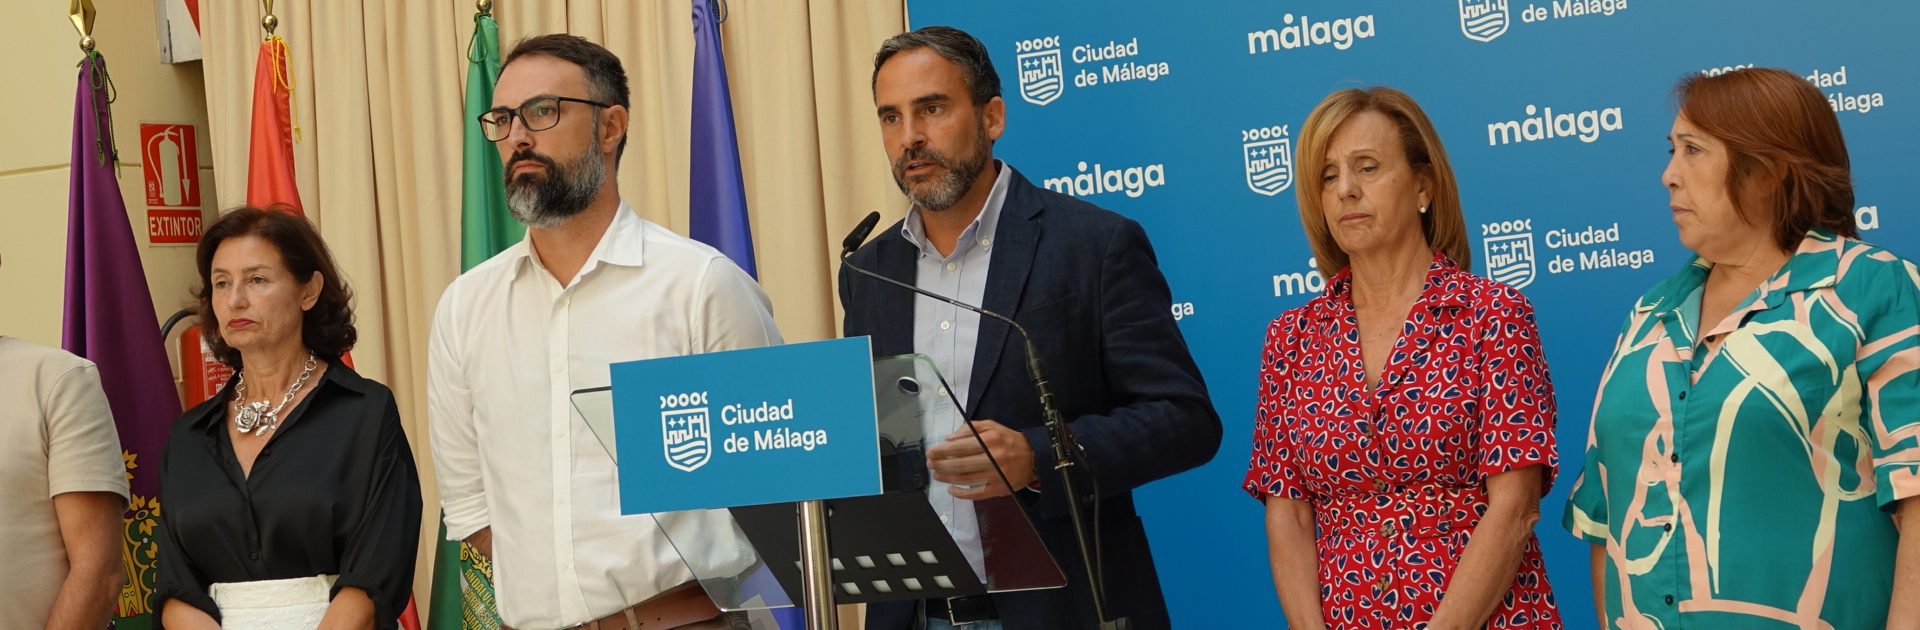 Pérez: “Paco de la Torre y Moreno Bonilla se han dado la mano para echar a los malagueños de la ciudad”